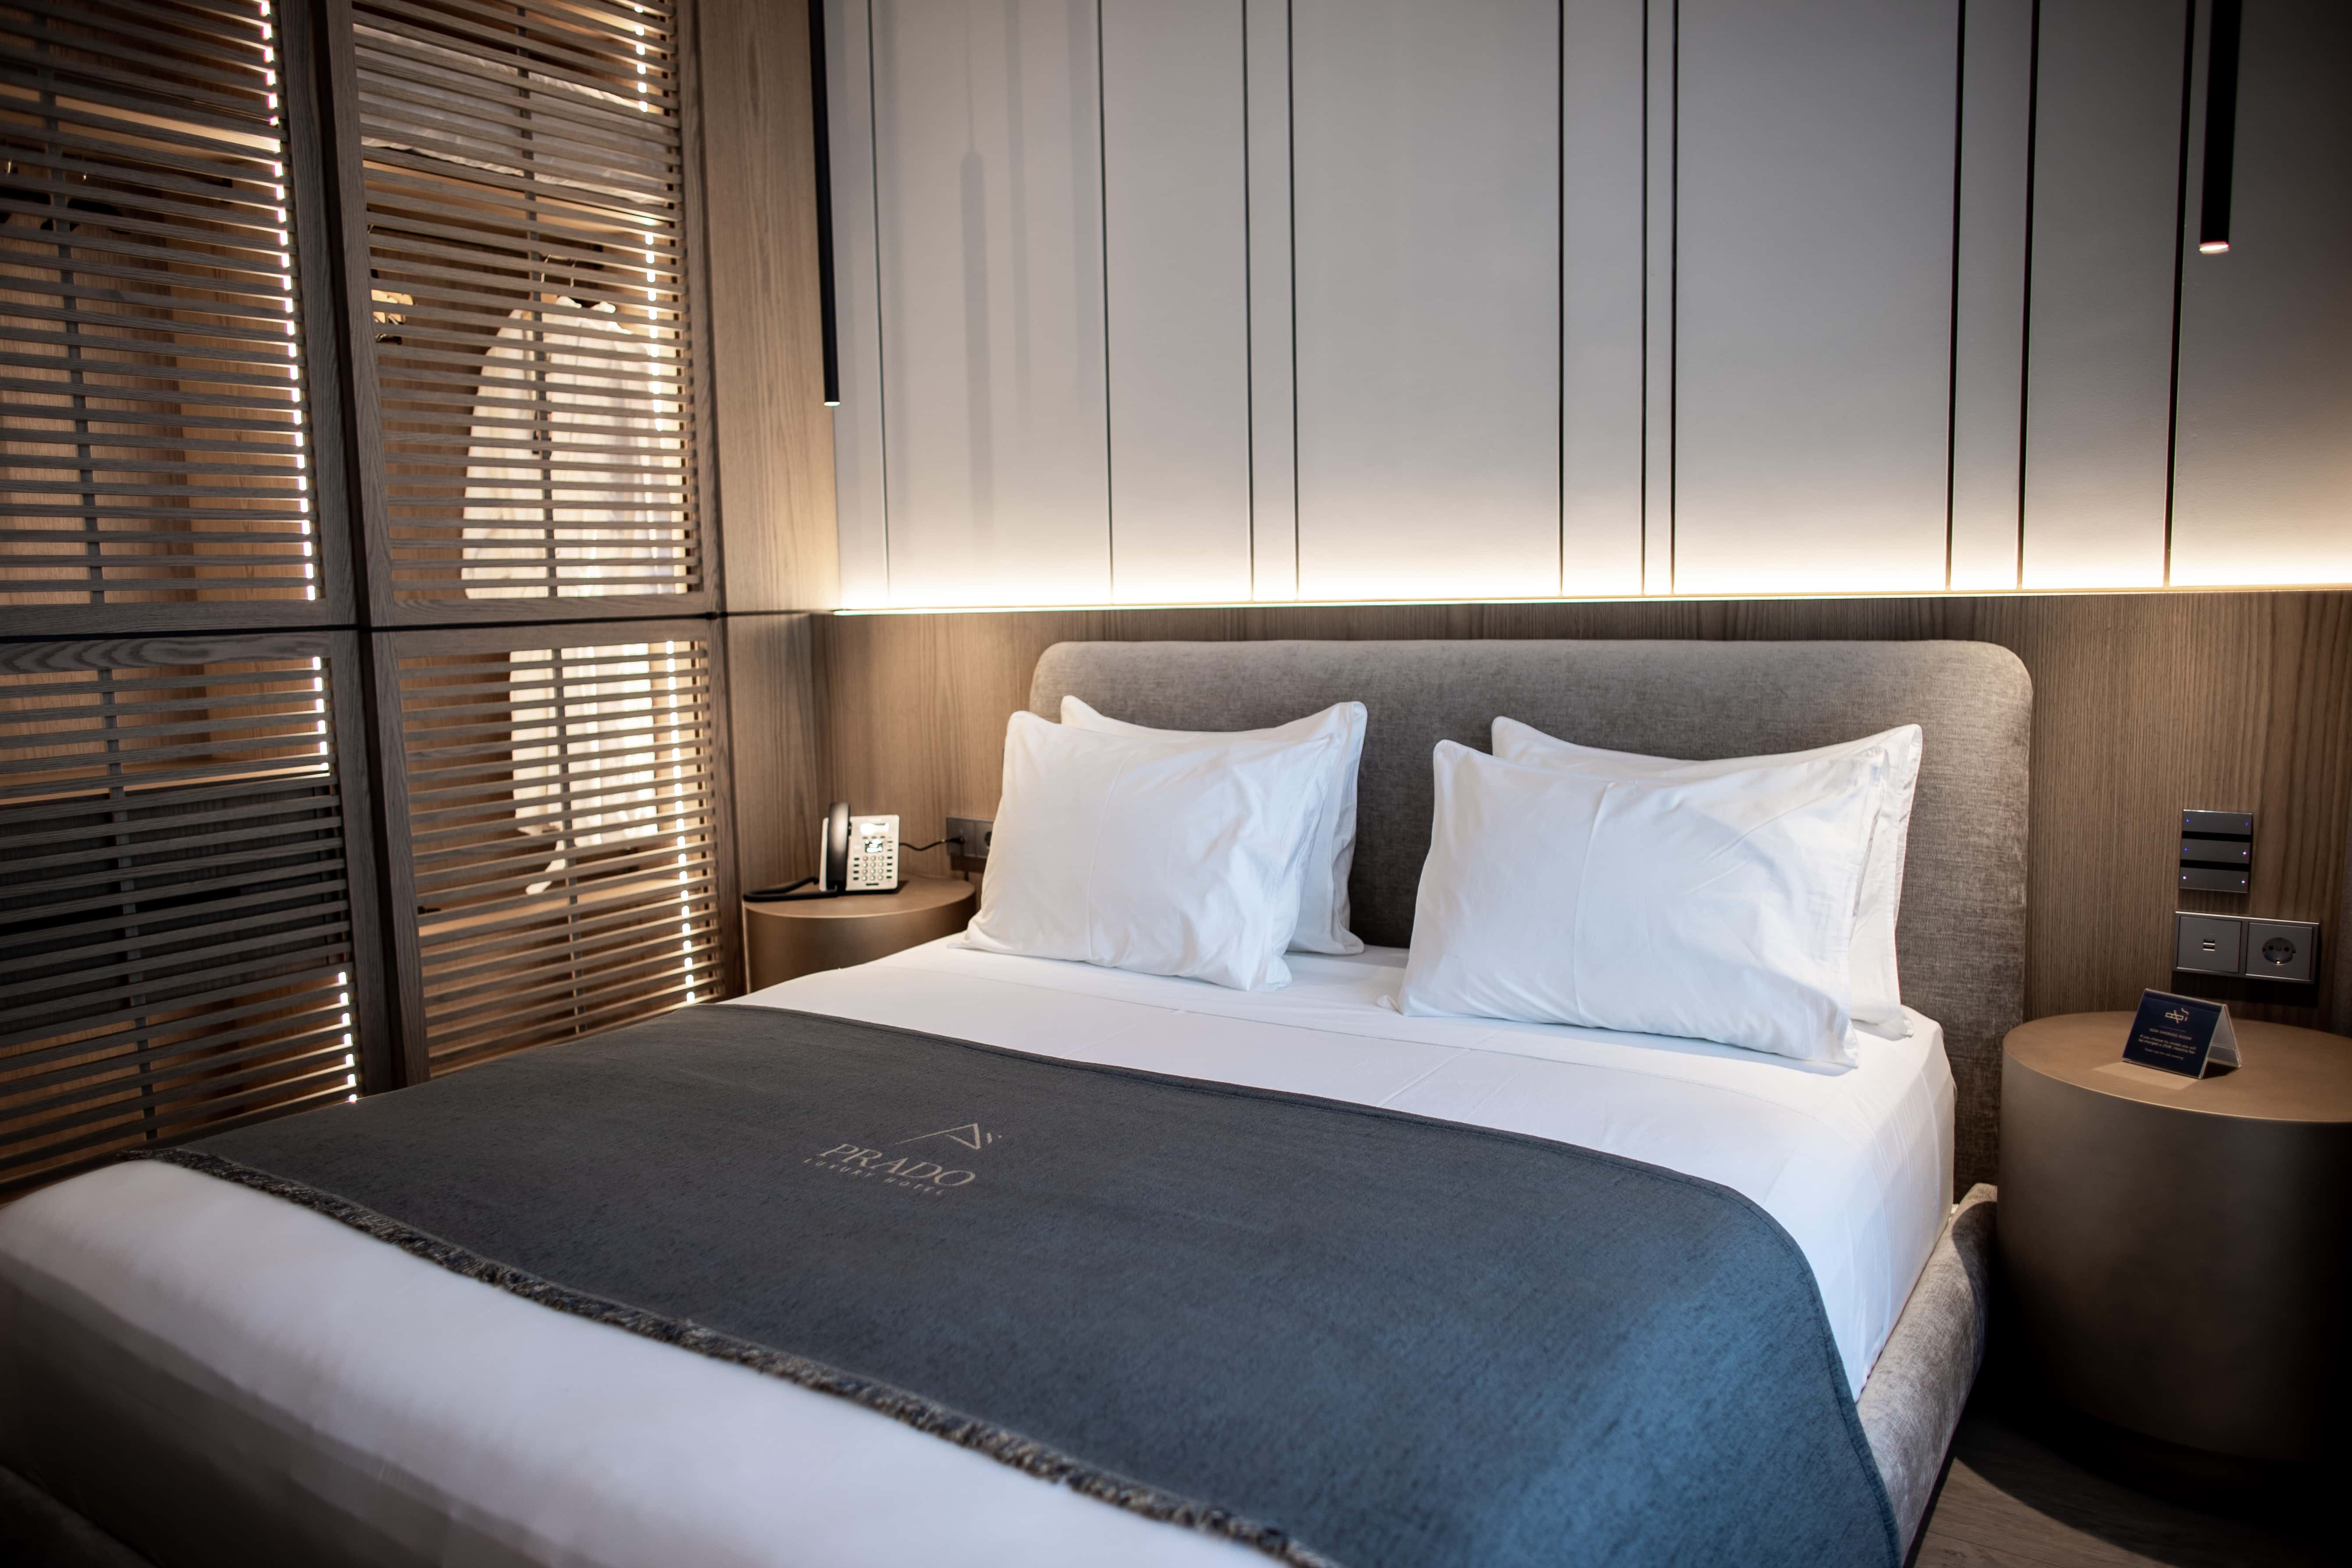 prado_luxury_hotel_room_standard_bed_frontal